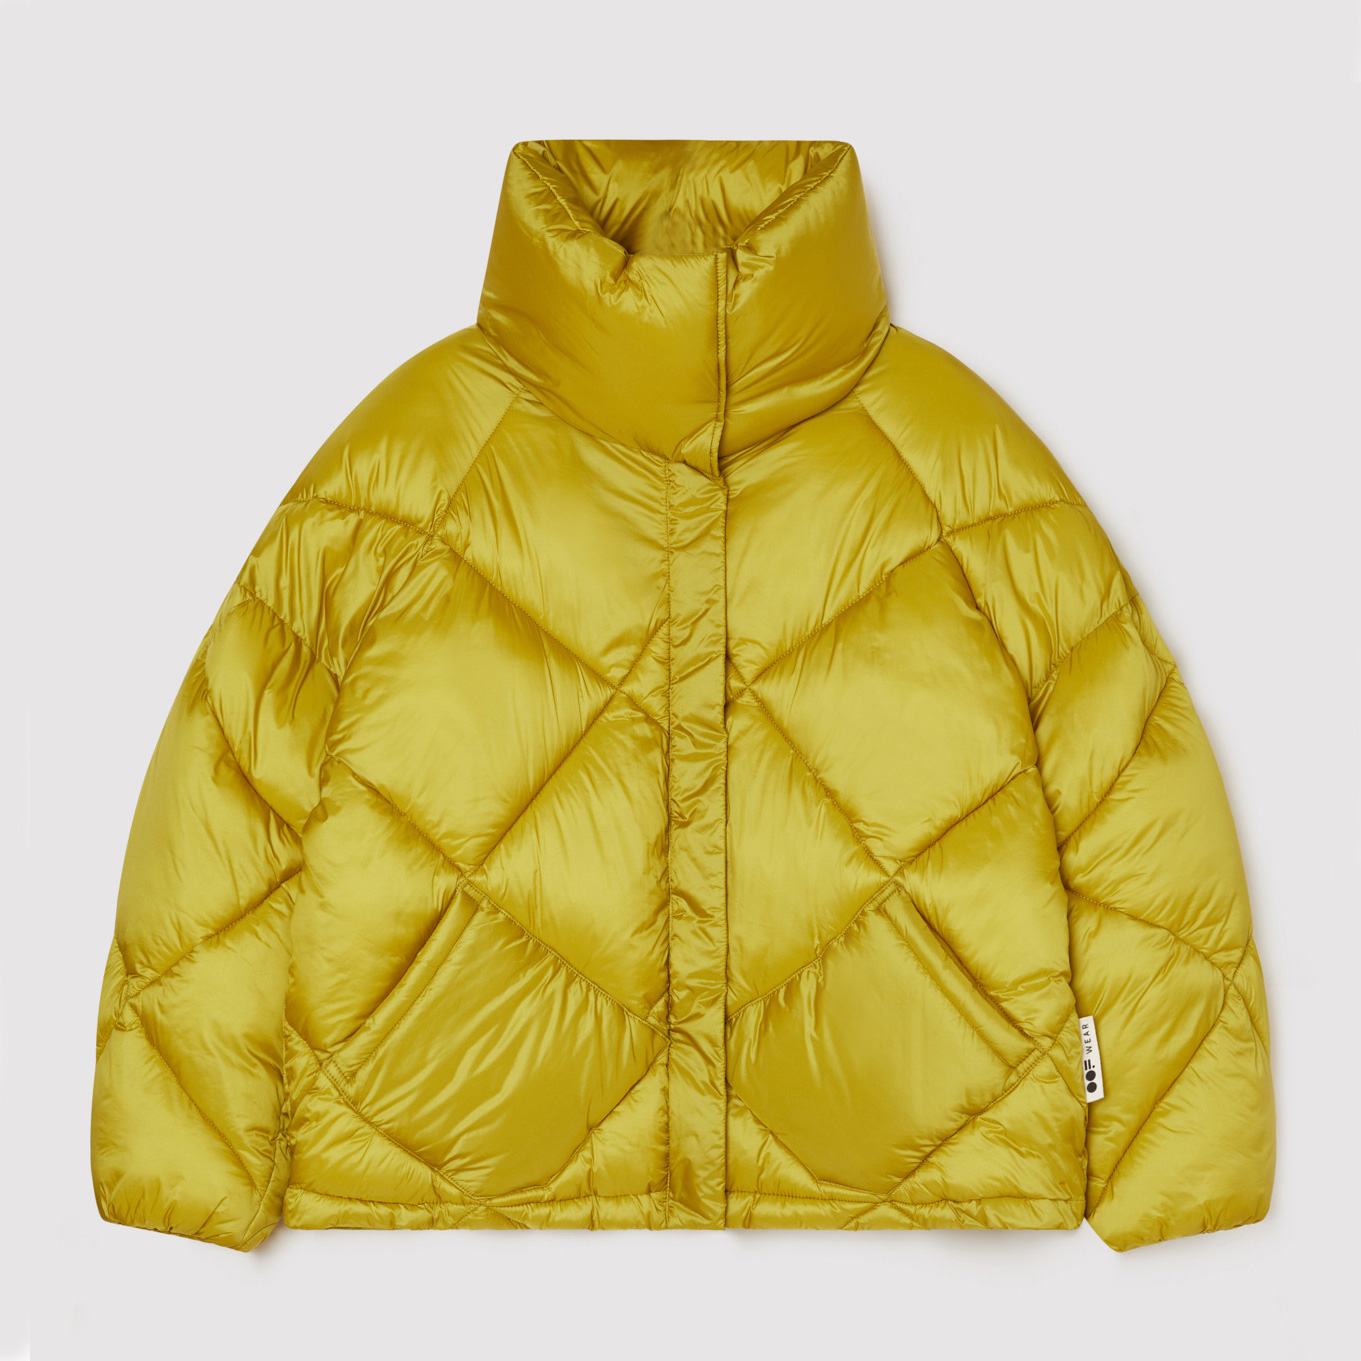 oof-wear-jacket-9000-iridescent-nylon